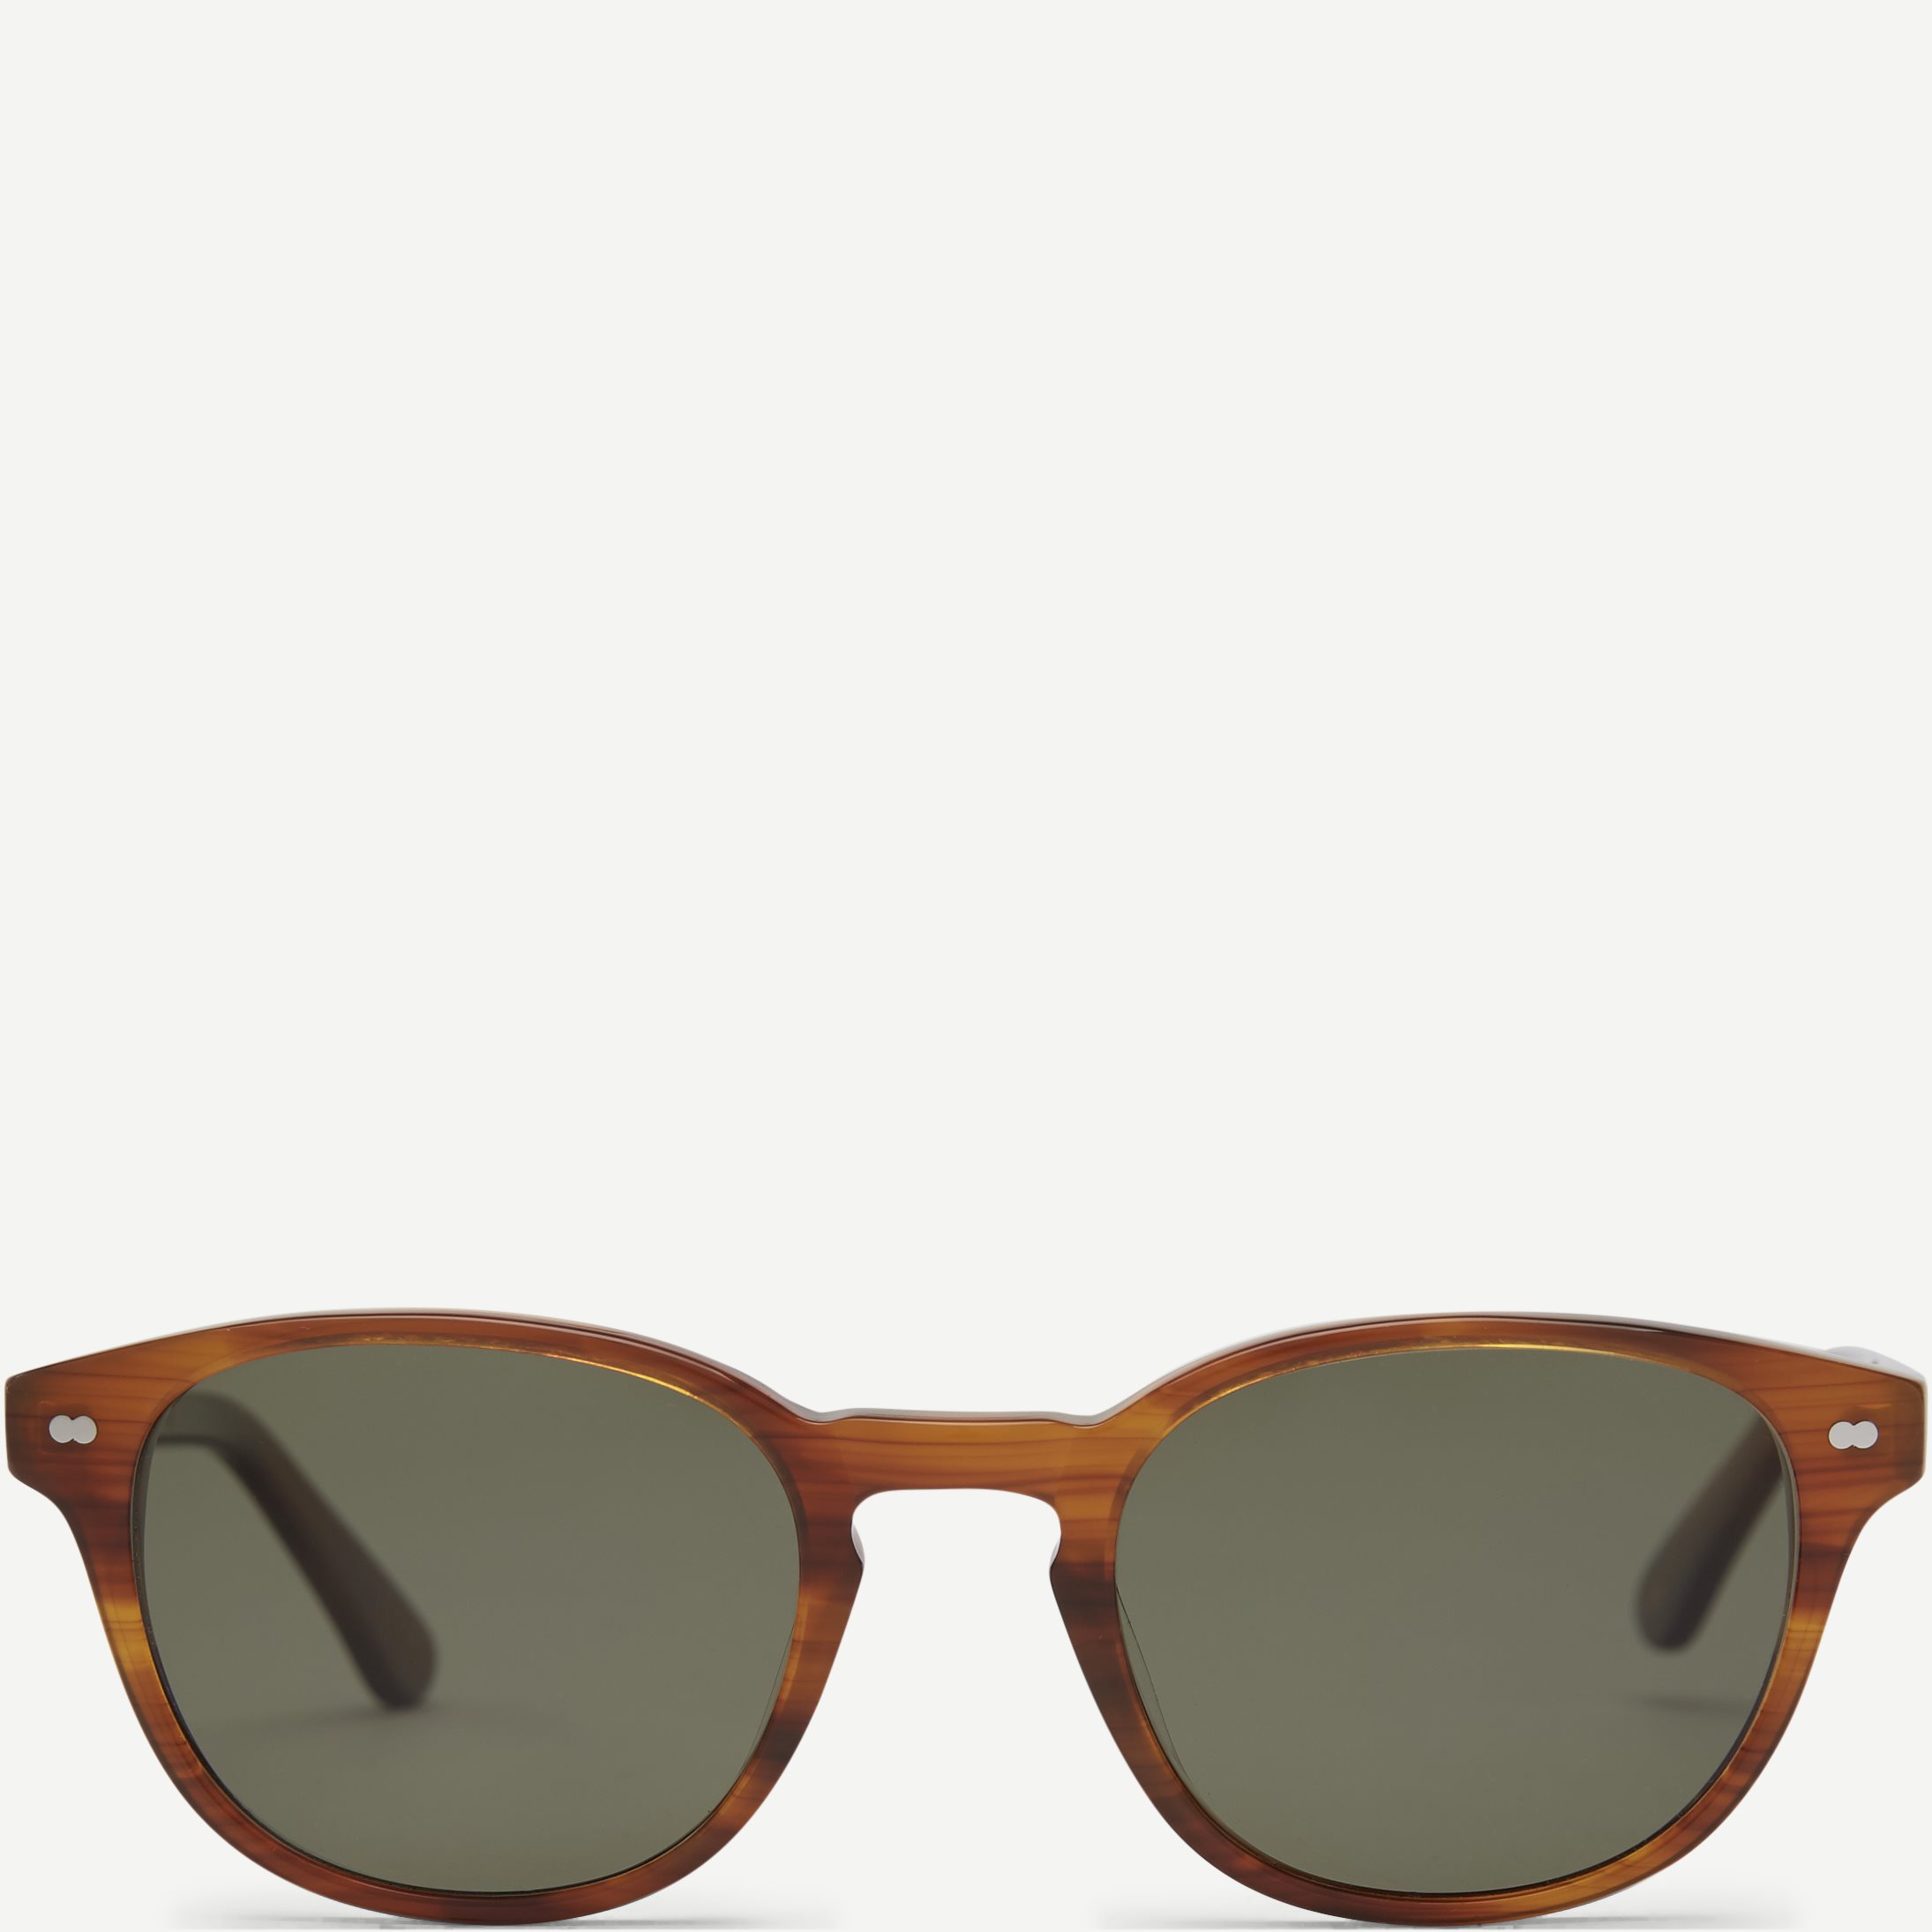 Mala Sunglasses - Accessories - Brown